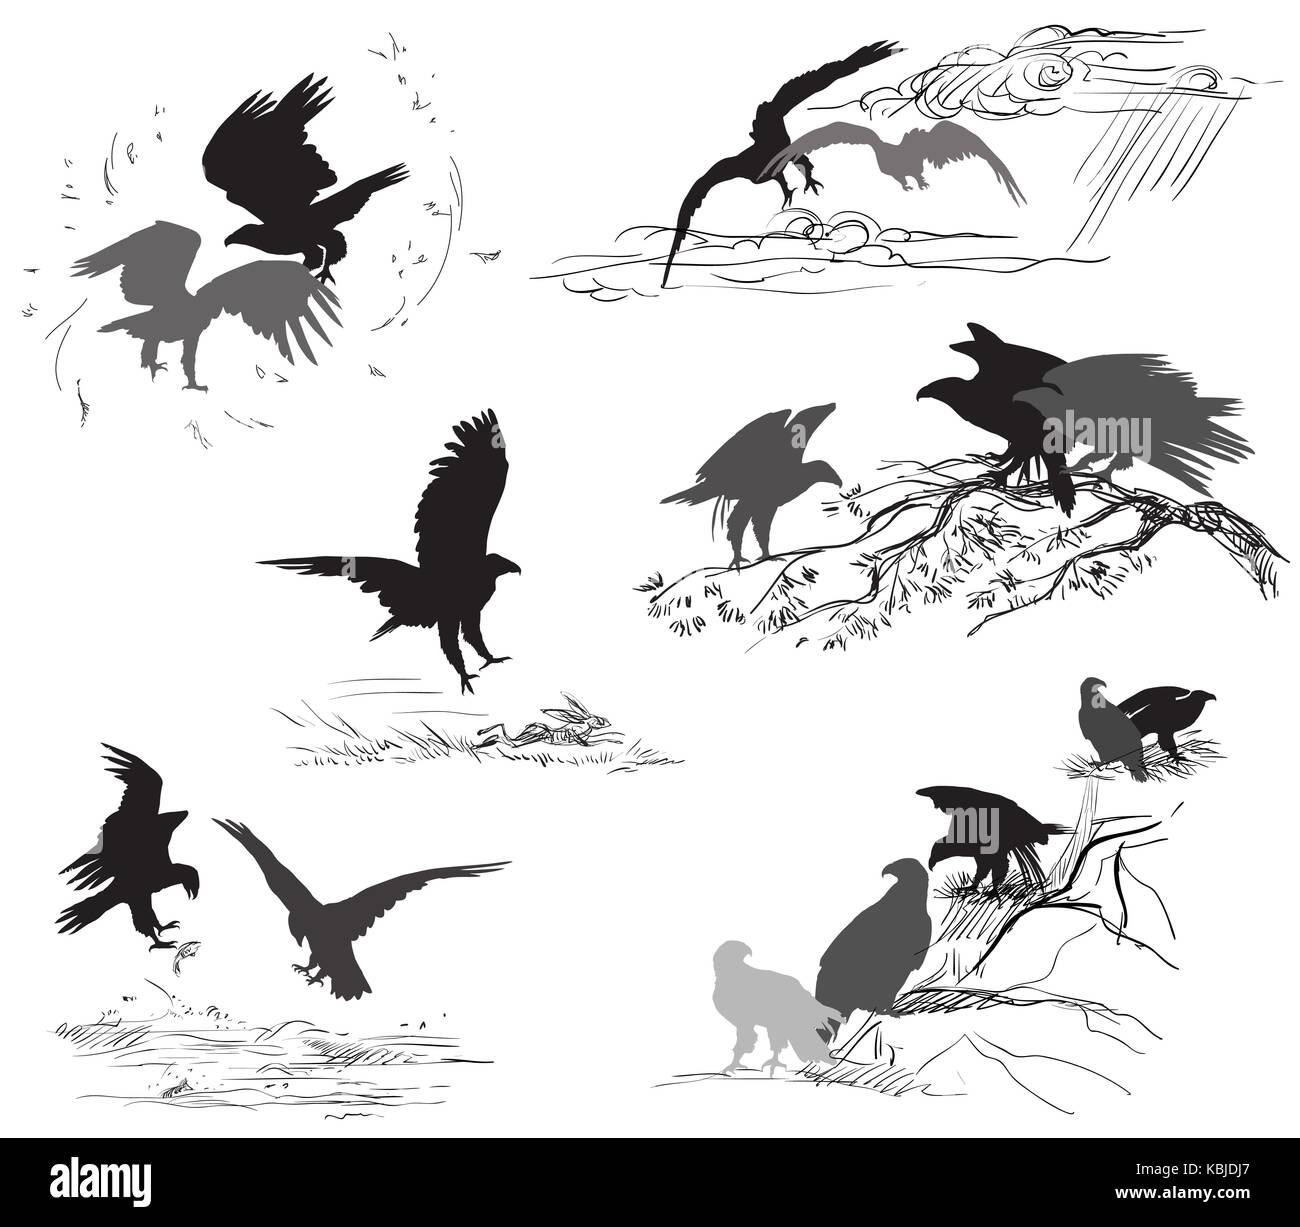 Der Vektor ausschneiden Szenen von eagle Silhouetten in schwarzer Farbe auf weißem Hintergrund. Beziehung der Adler Stock Vektor